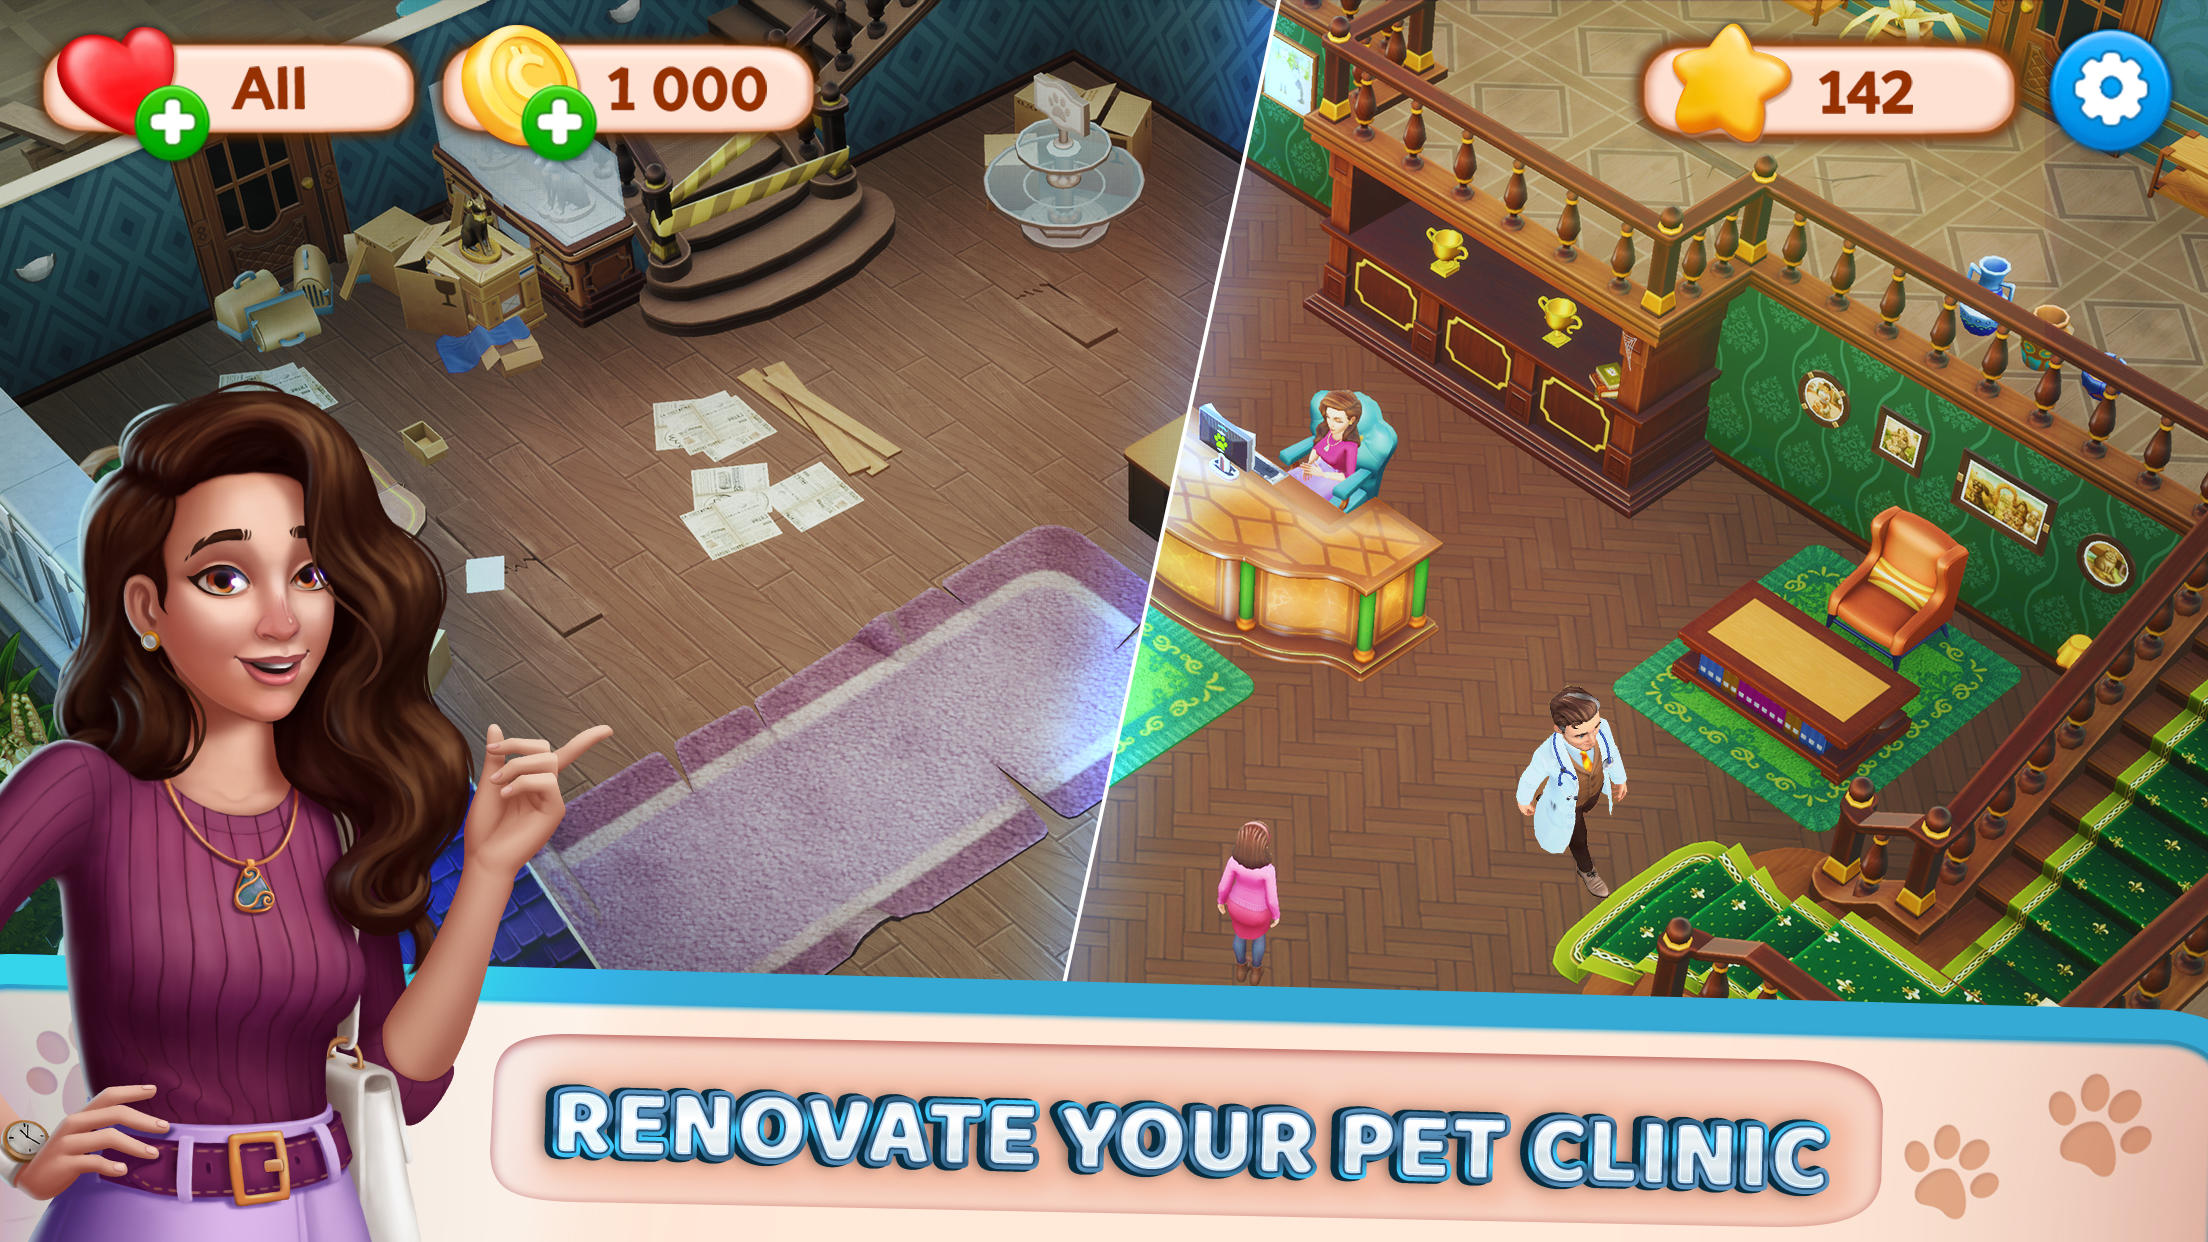 Screenshot 1 of Pet Clinic - Kostenloses Puzzlespiel mit niedlichen Haustieren 1.0.5.5